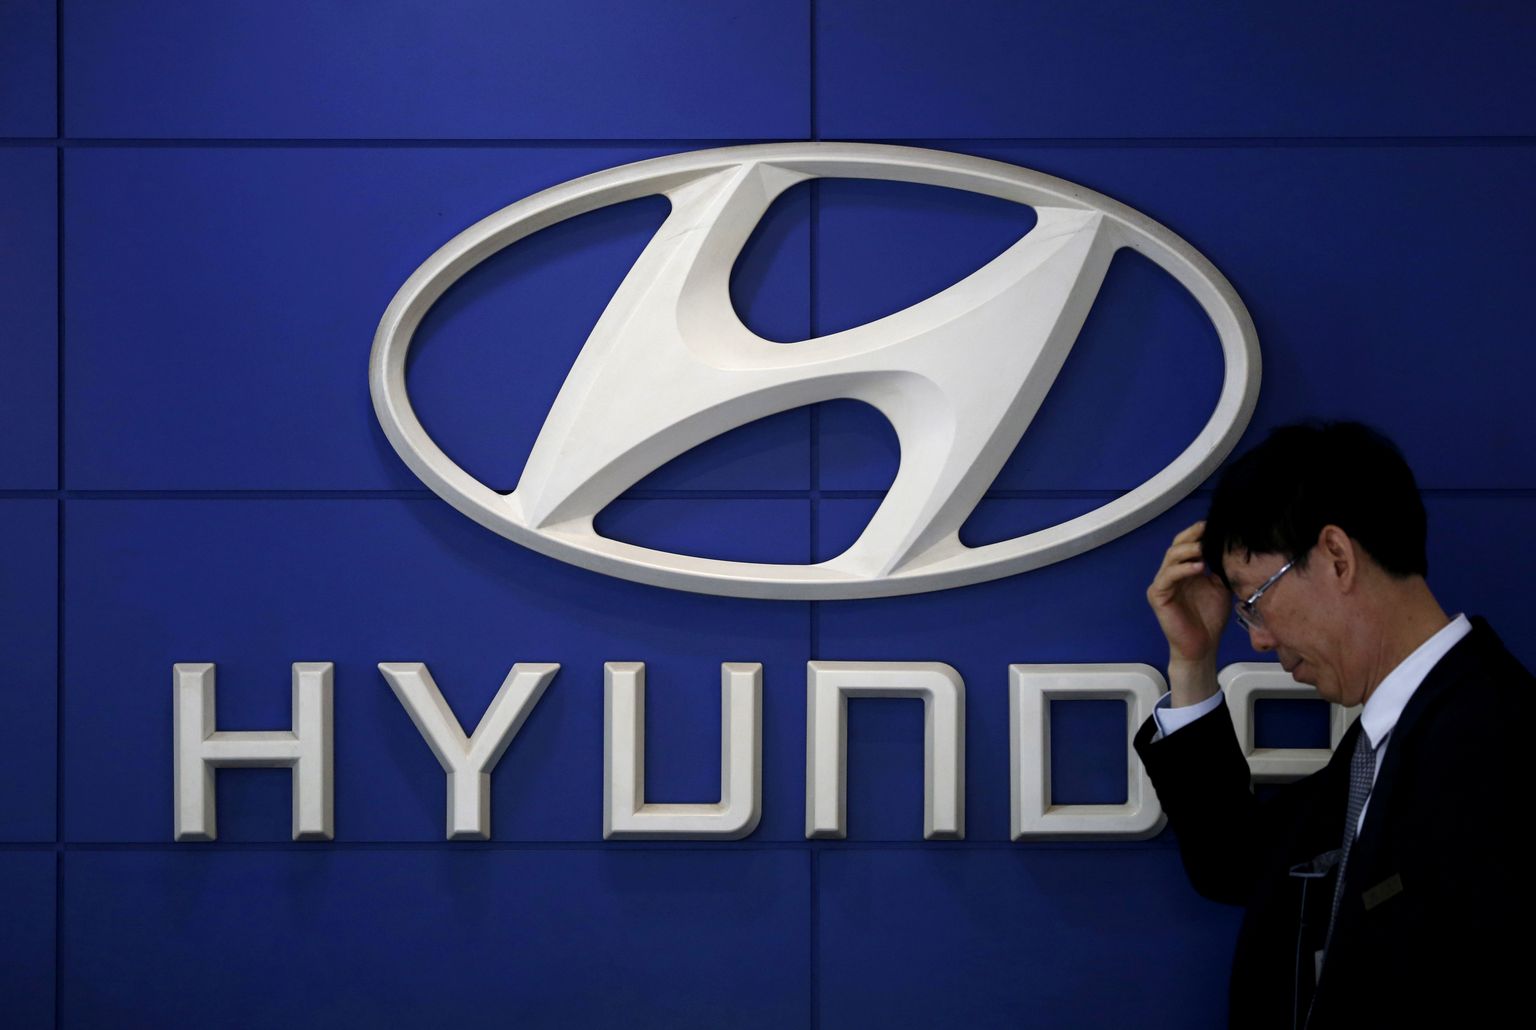 Hyunday on üks suurtest autotootjatest, keda imporditariifid otseselt mõjutaksid.